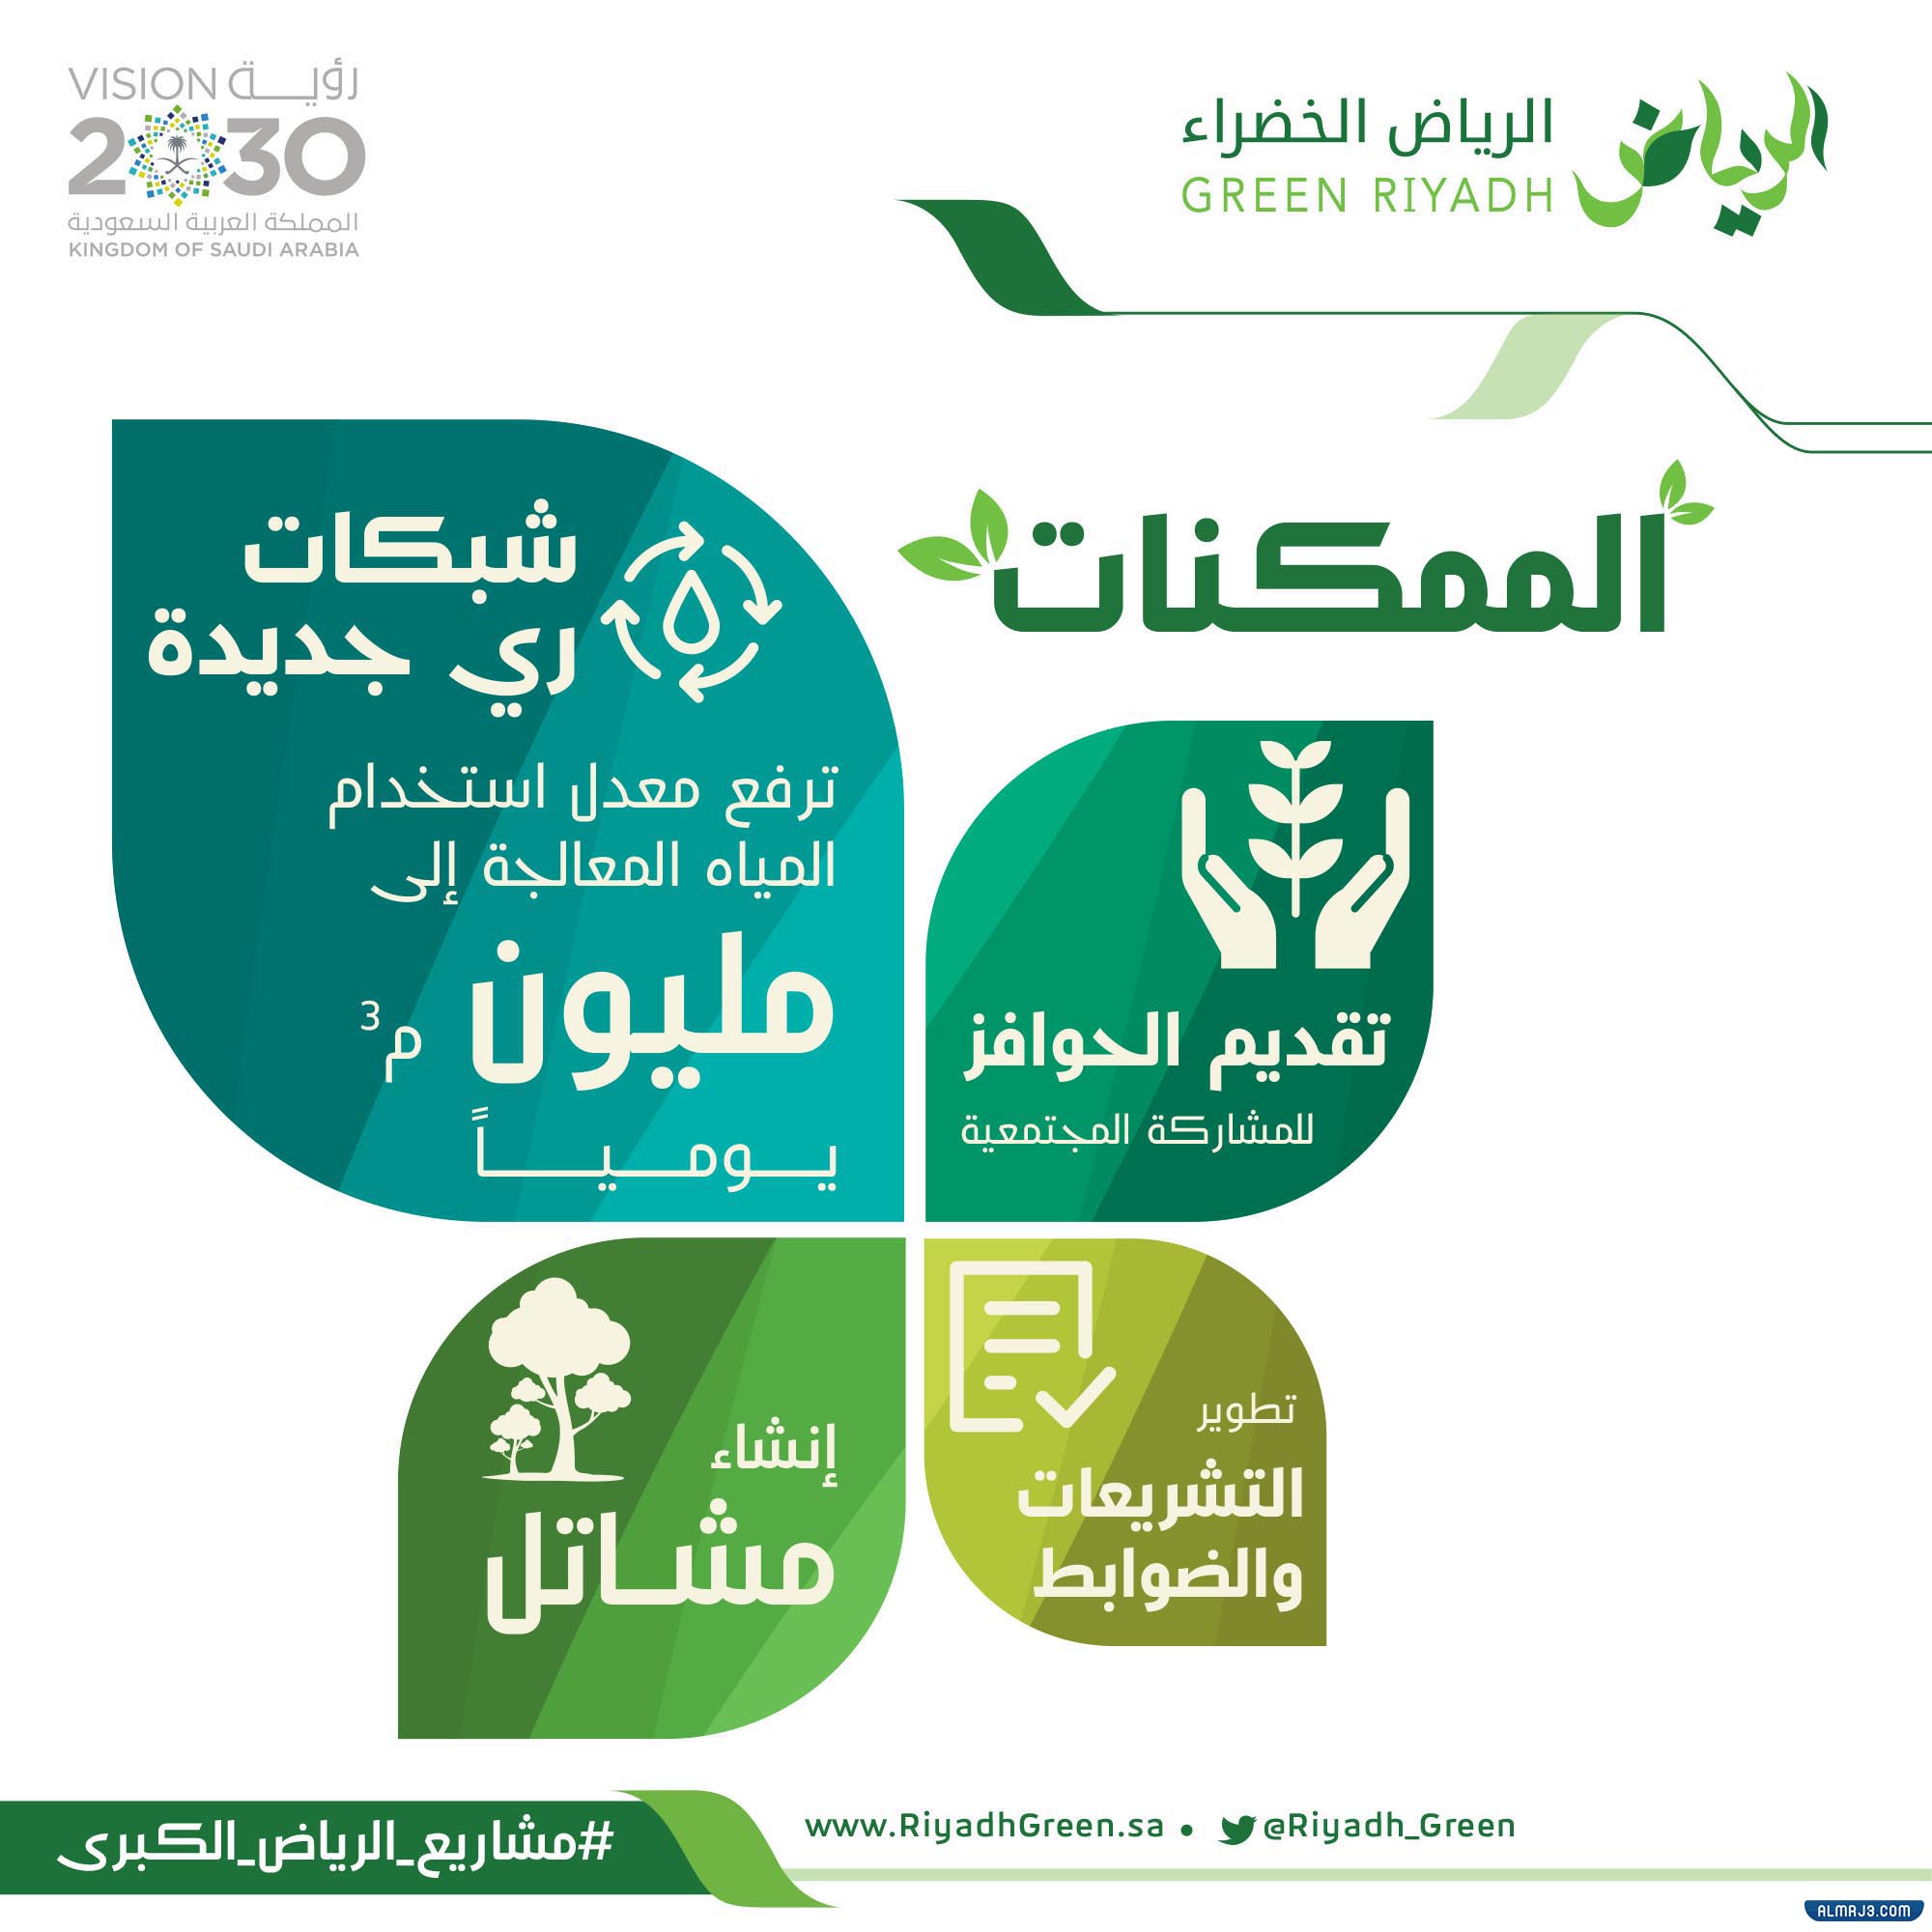 صور توضح أهداف مشروع الرياض الخضراء